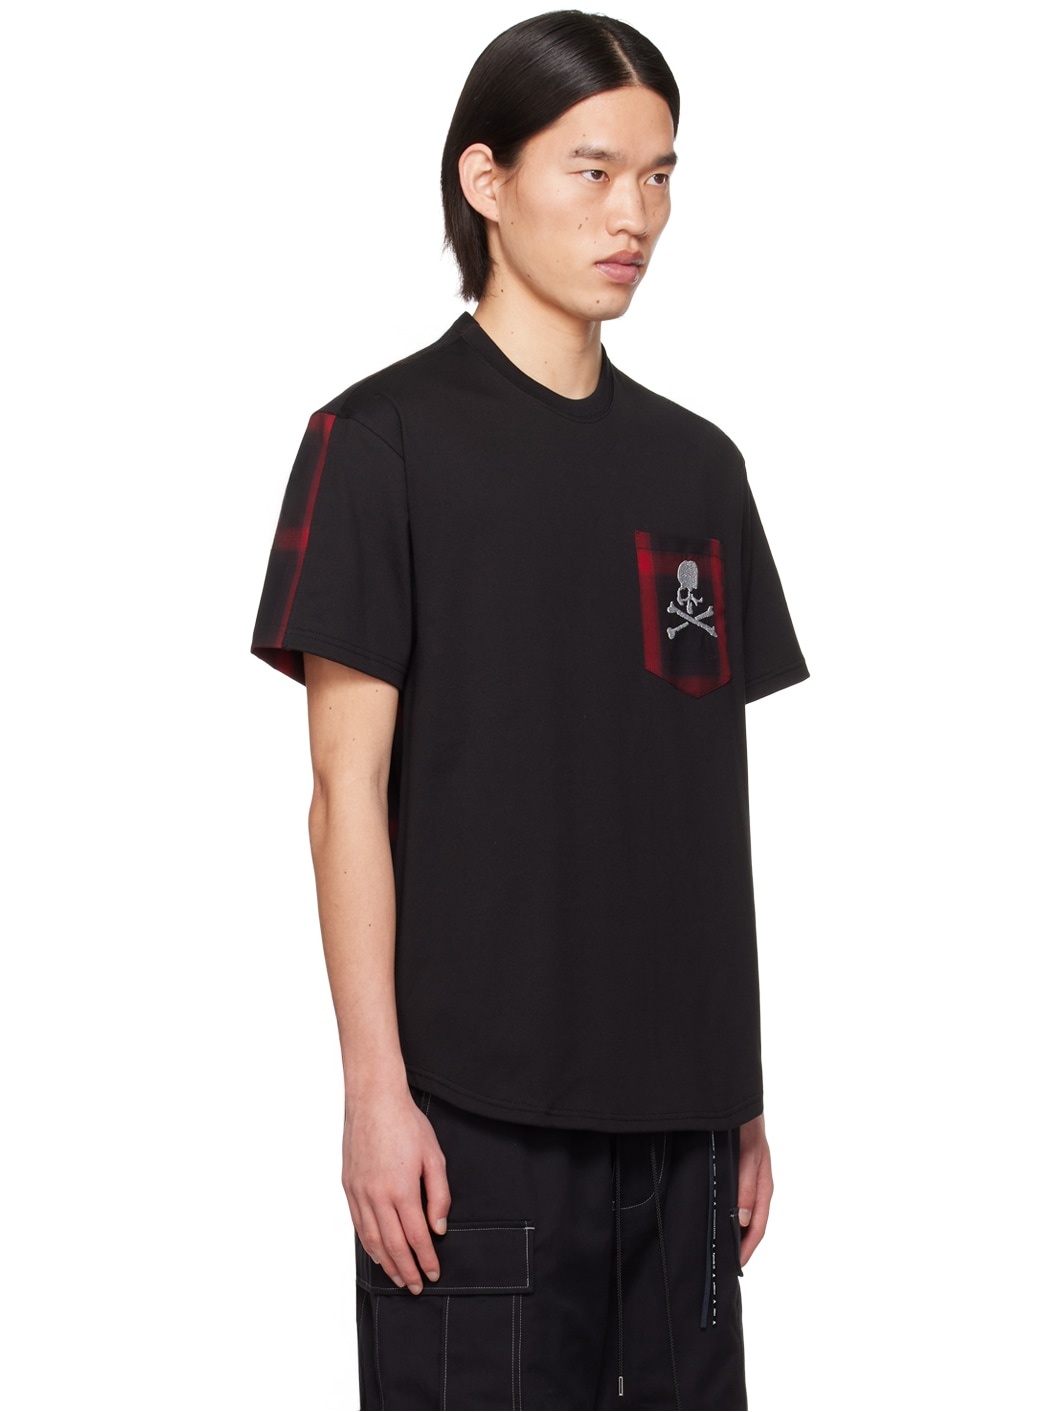 Black & Red Check T-Shirt - 2